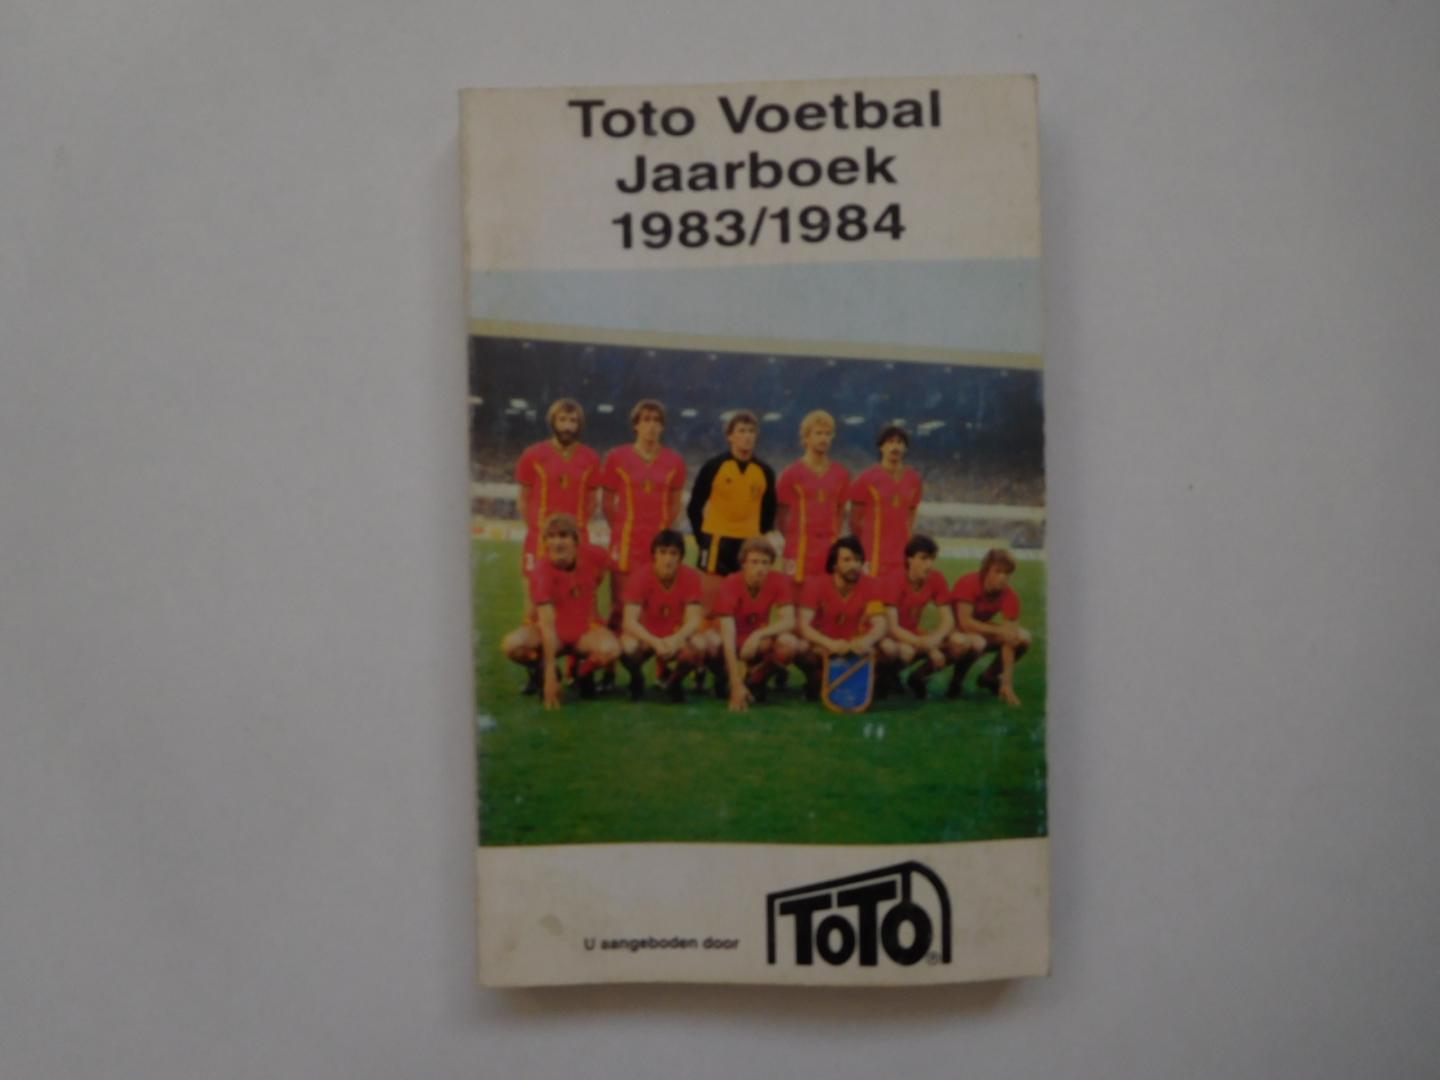 Carlos de Veene - Toto Voetbal Jaarboek 1983/1984